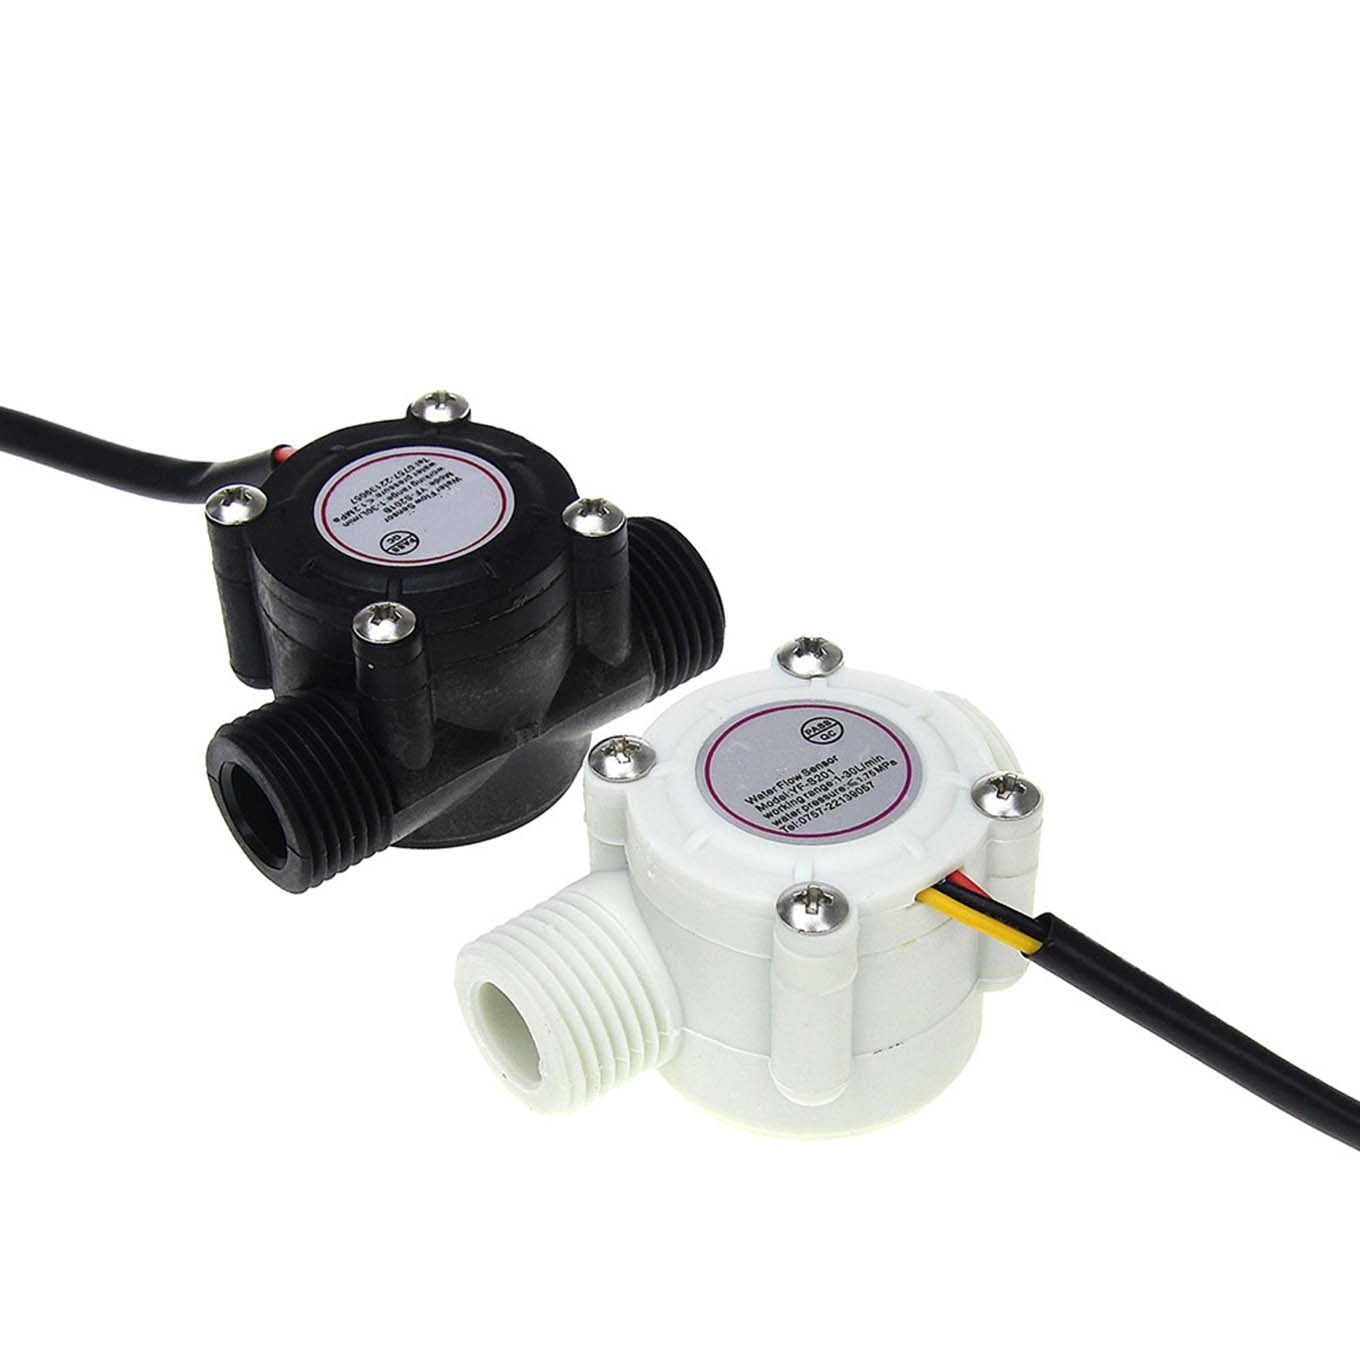 YF-s201 water flow sensor